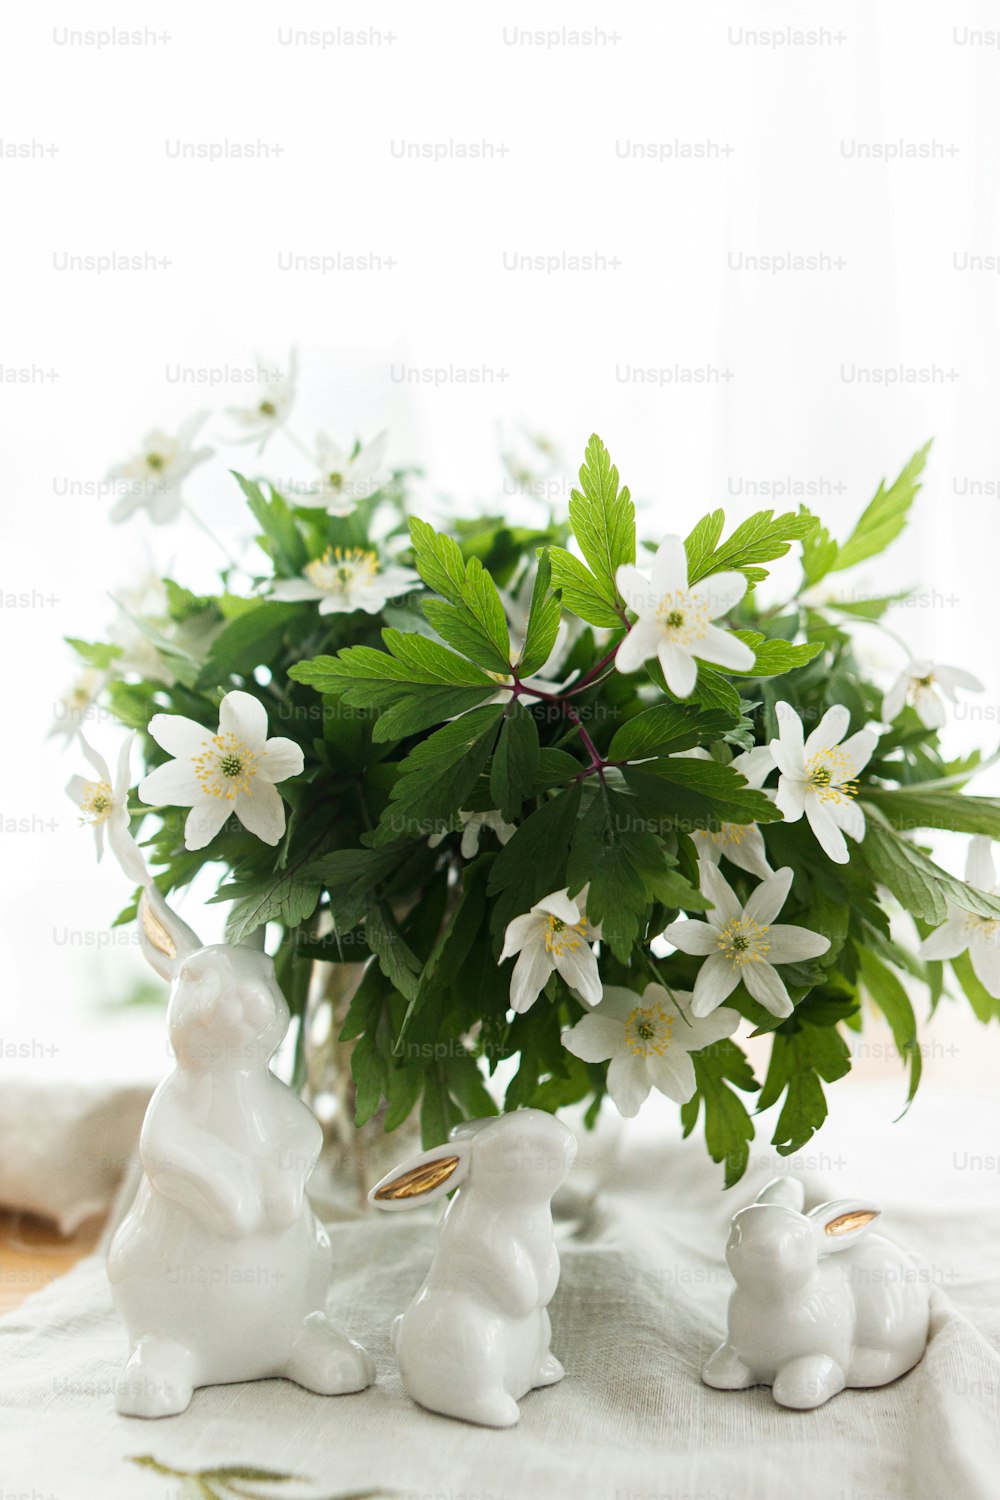 柔らかな光の中で素朴なテーブルの上のリネン布ナプキンにかわいい白いウサギと春の花。イースターおめでとう!イースター狩りのコンセプト。白いウサギの置物と咲くアネモネの花農村静物画